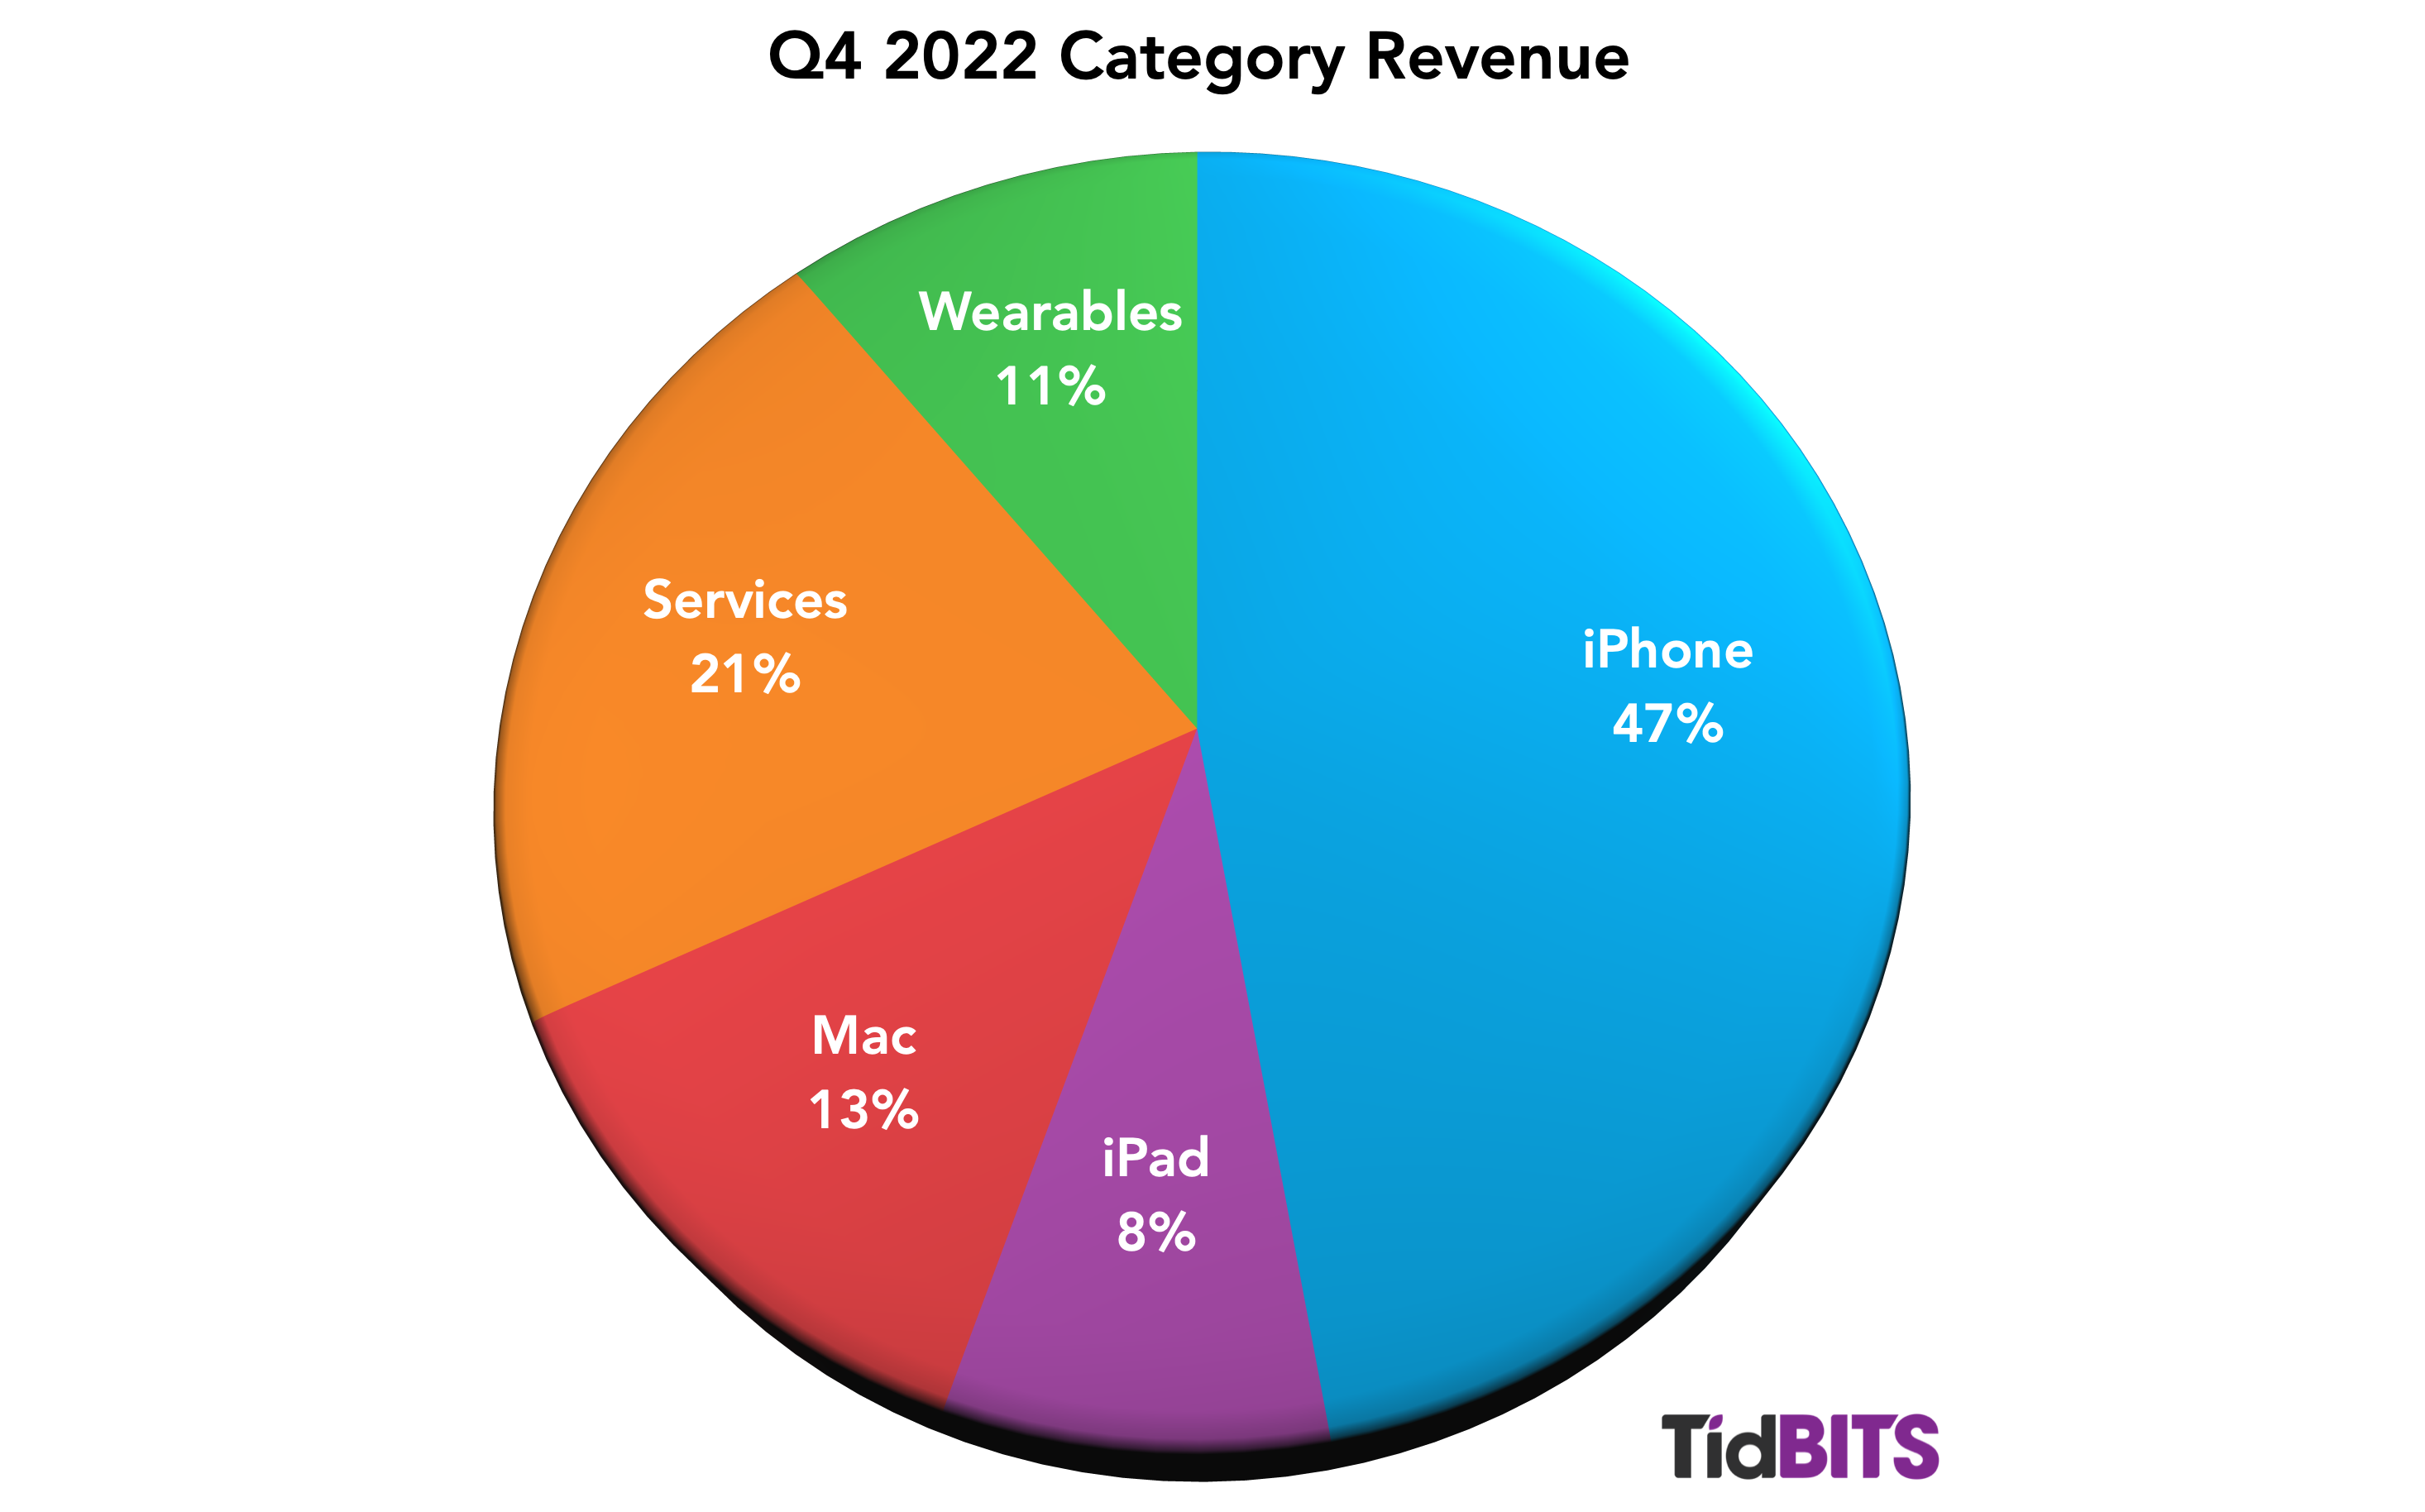 iPhone 47%, Diensten 21%, Mac 13%, Wearables 11%, iPad 8%